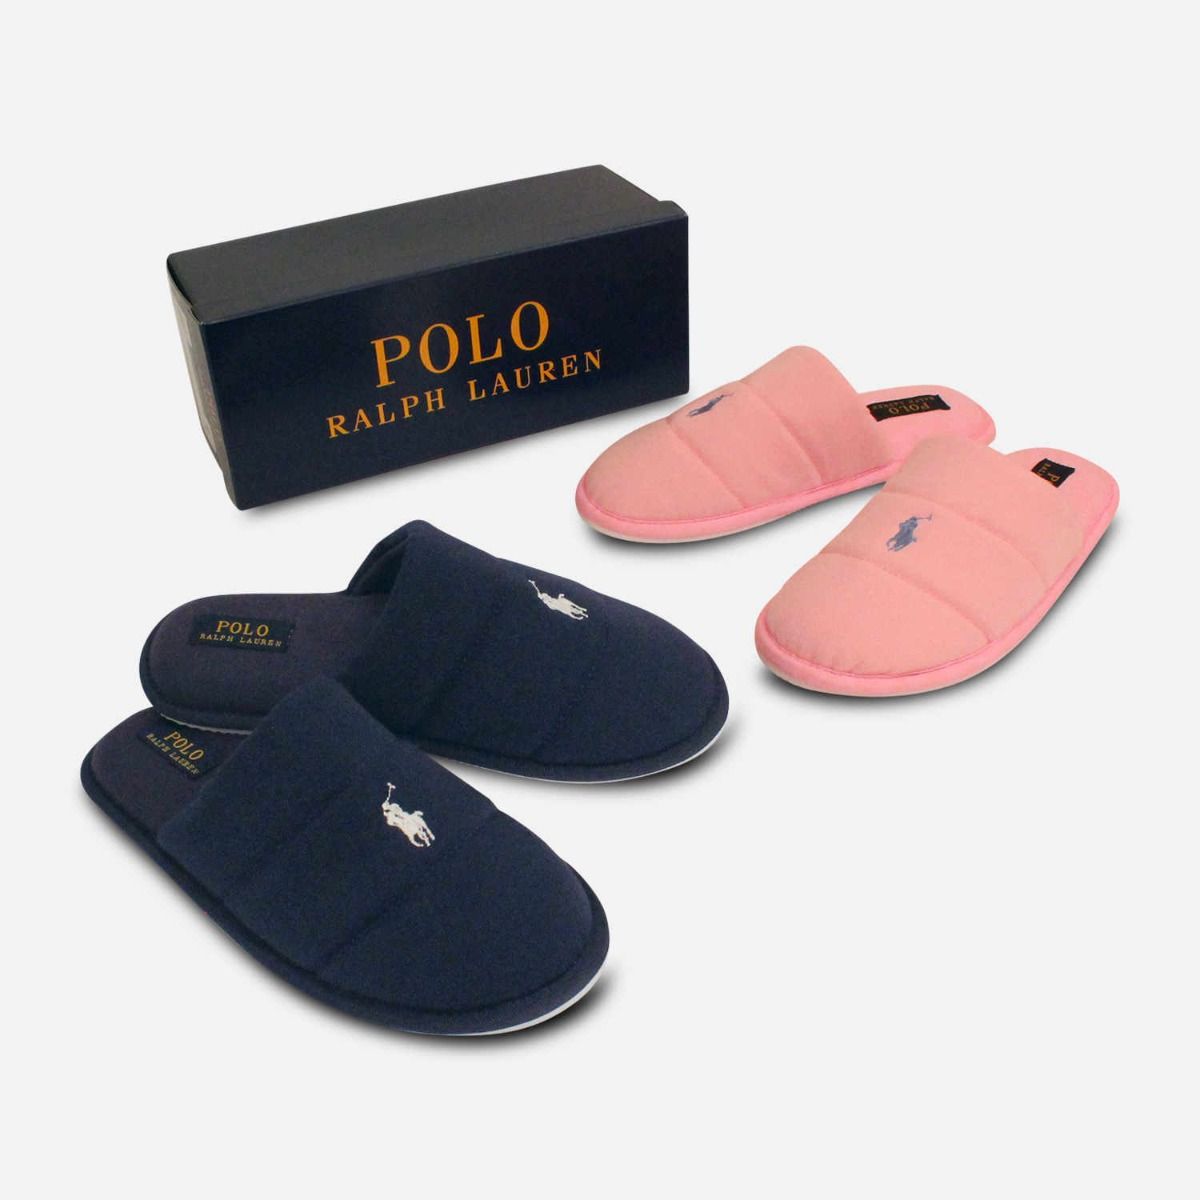 Rubber Audrie sandals Polo Ralph Lauren - POLO RALPH LAUREN - AsterModa